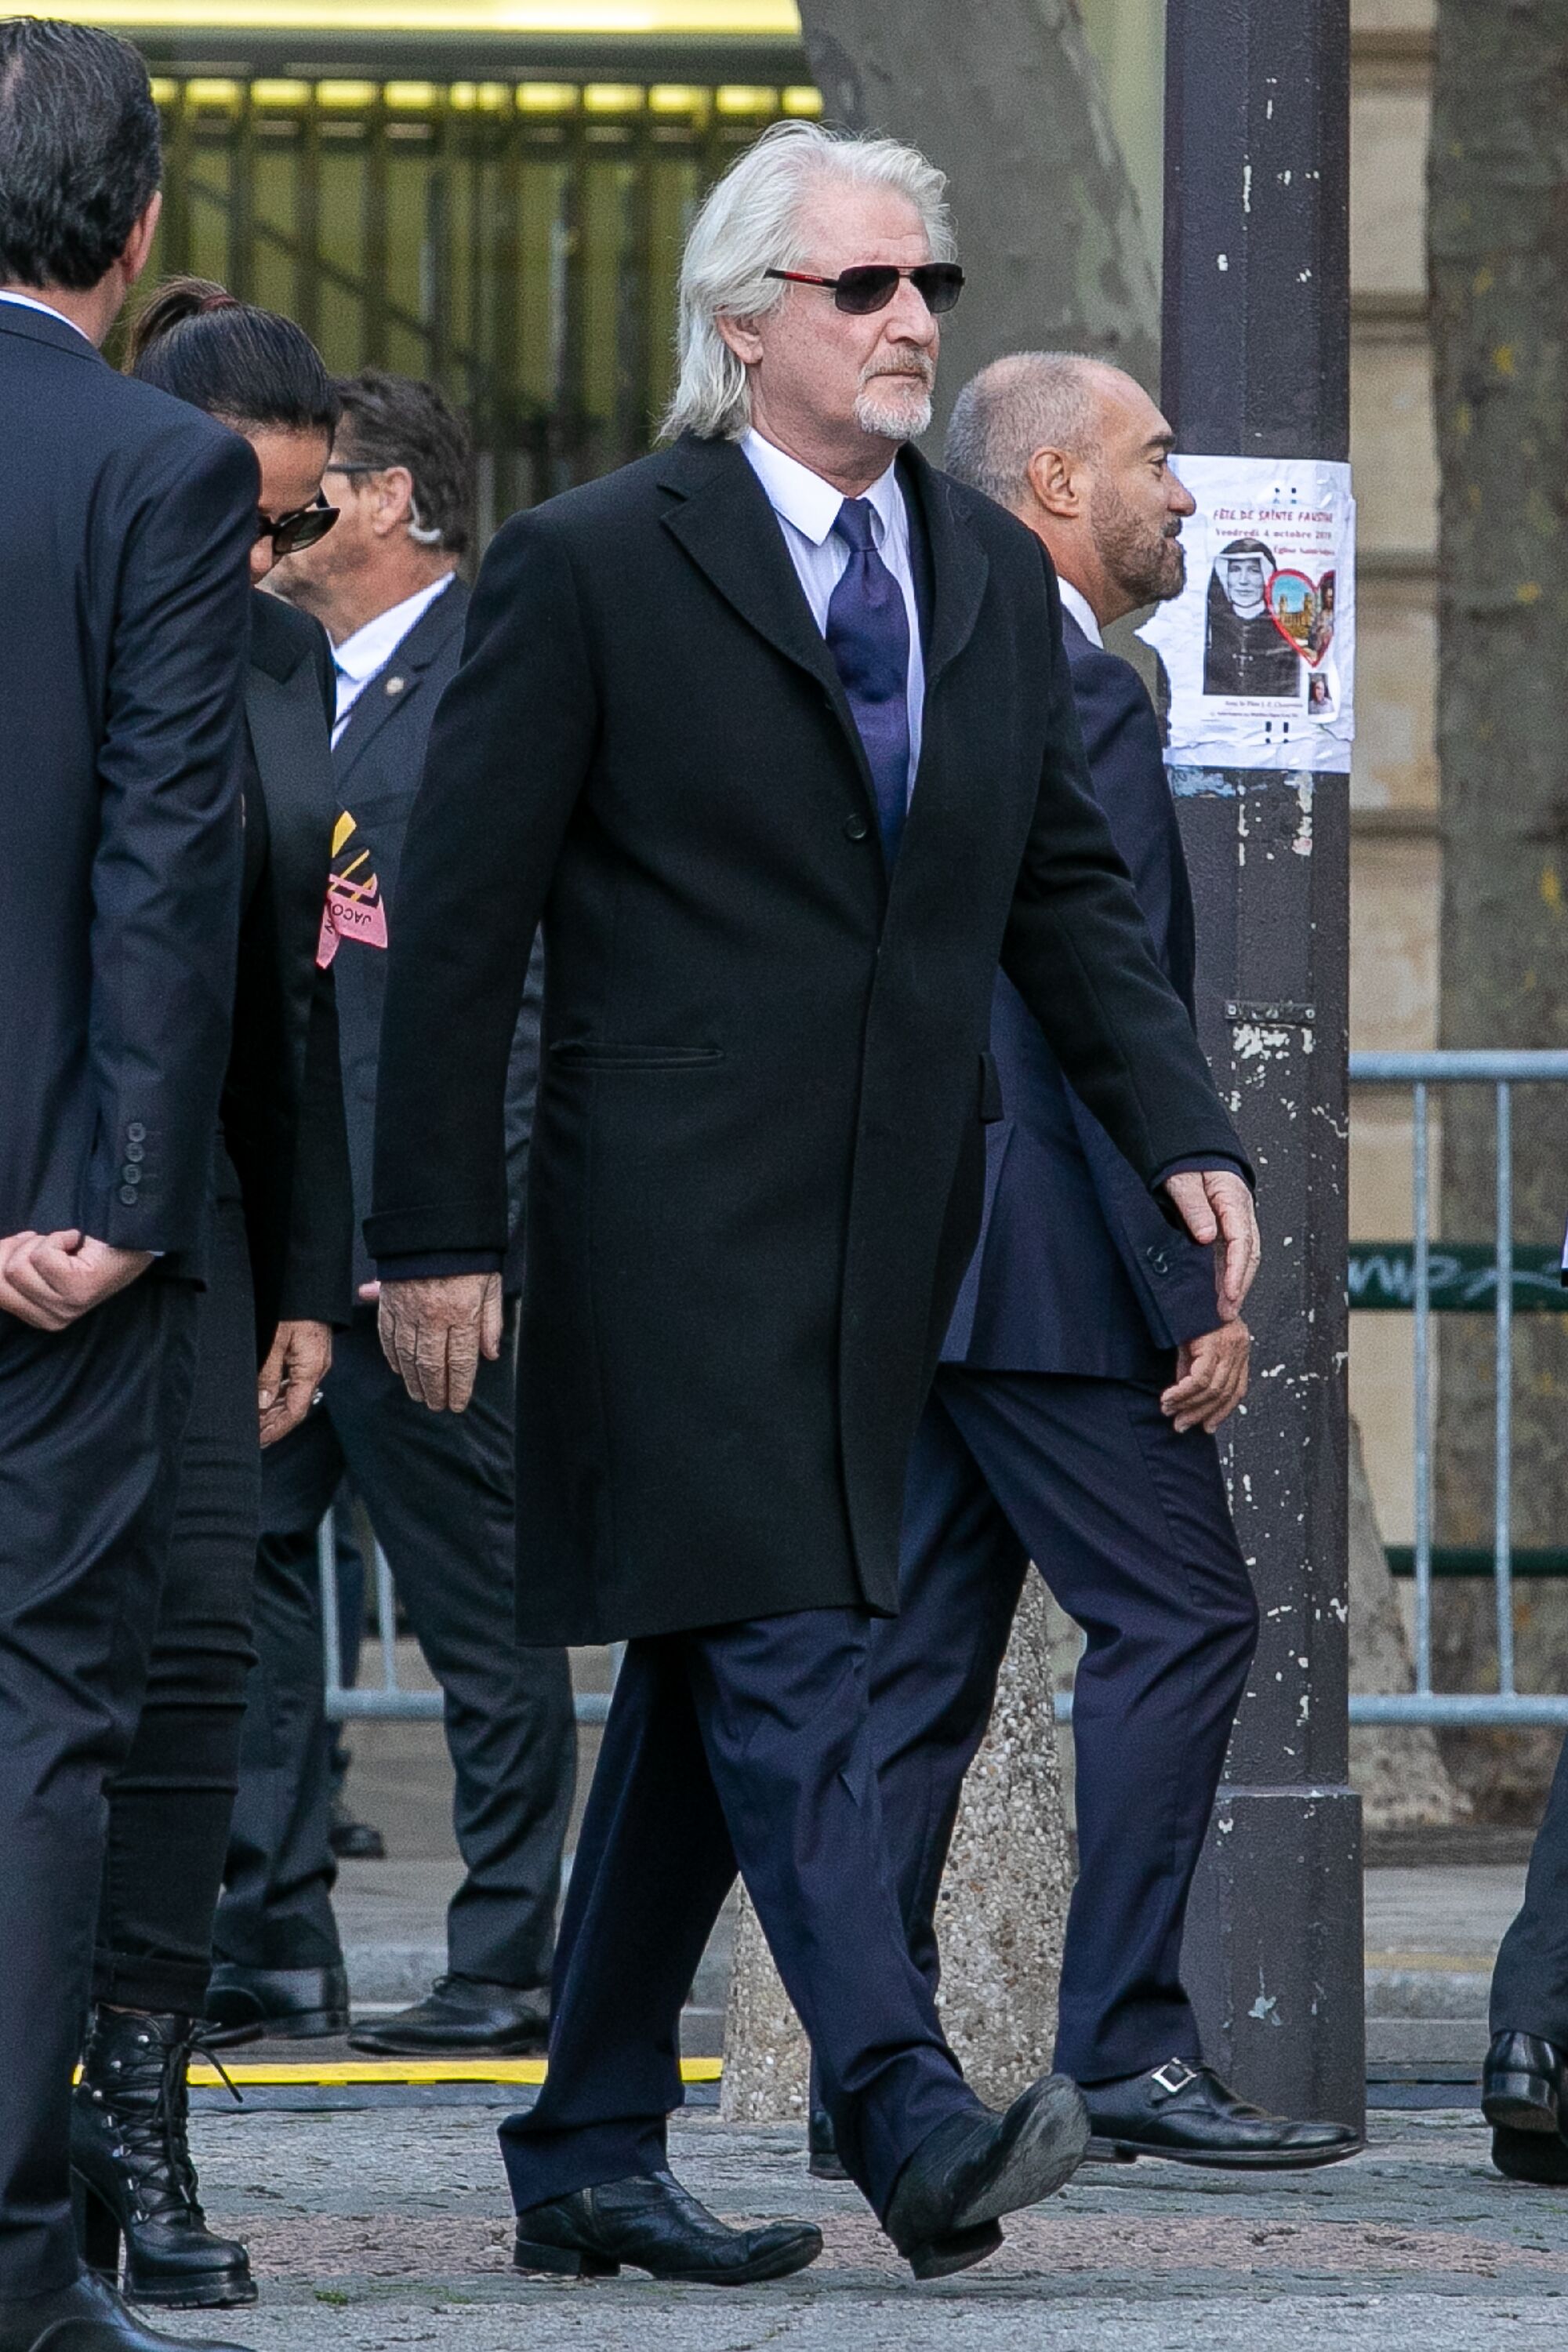 Patrick Sébastien assiste aux funérailles de l'ancien président français Jacques Chirac à l'église Saint-Sulpice à Paris, France. | Photo : Getty Images